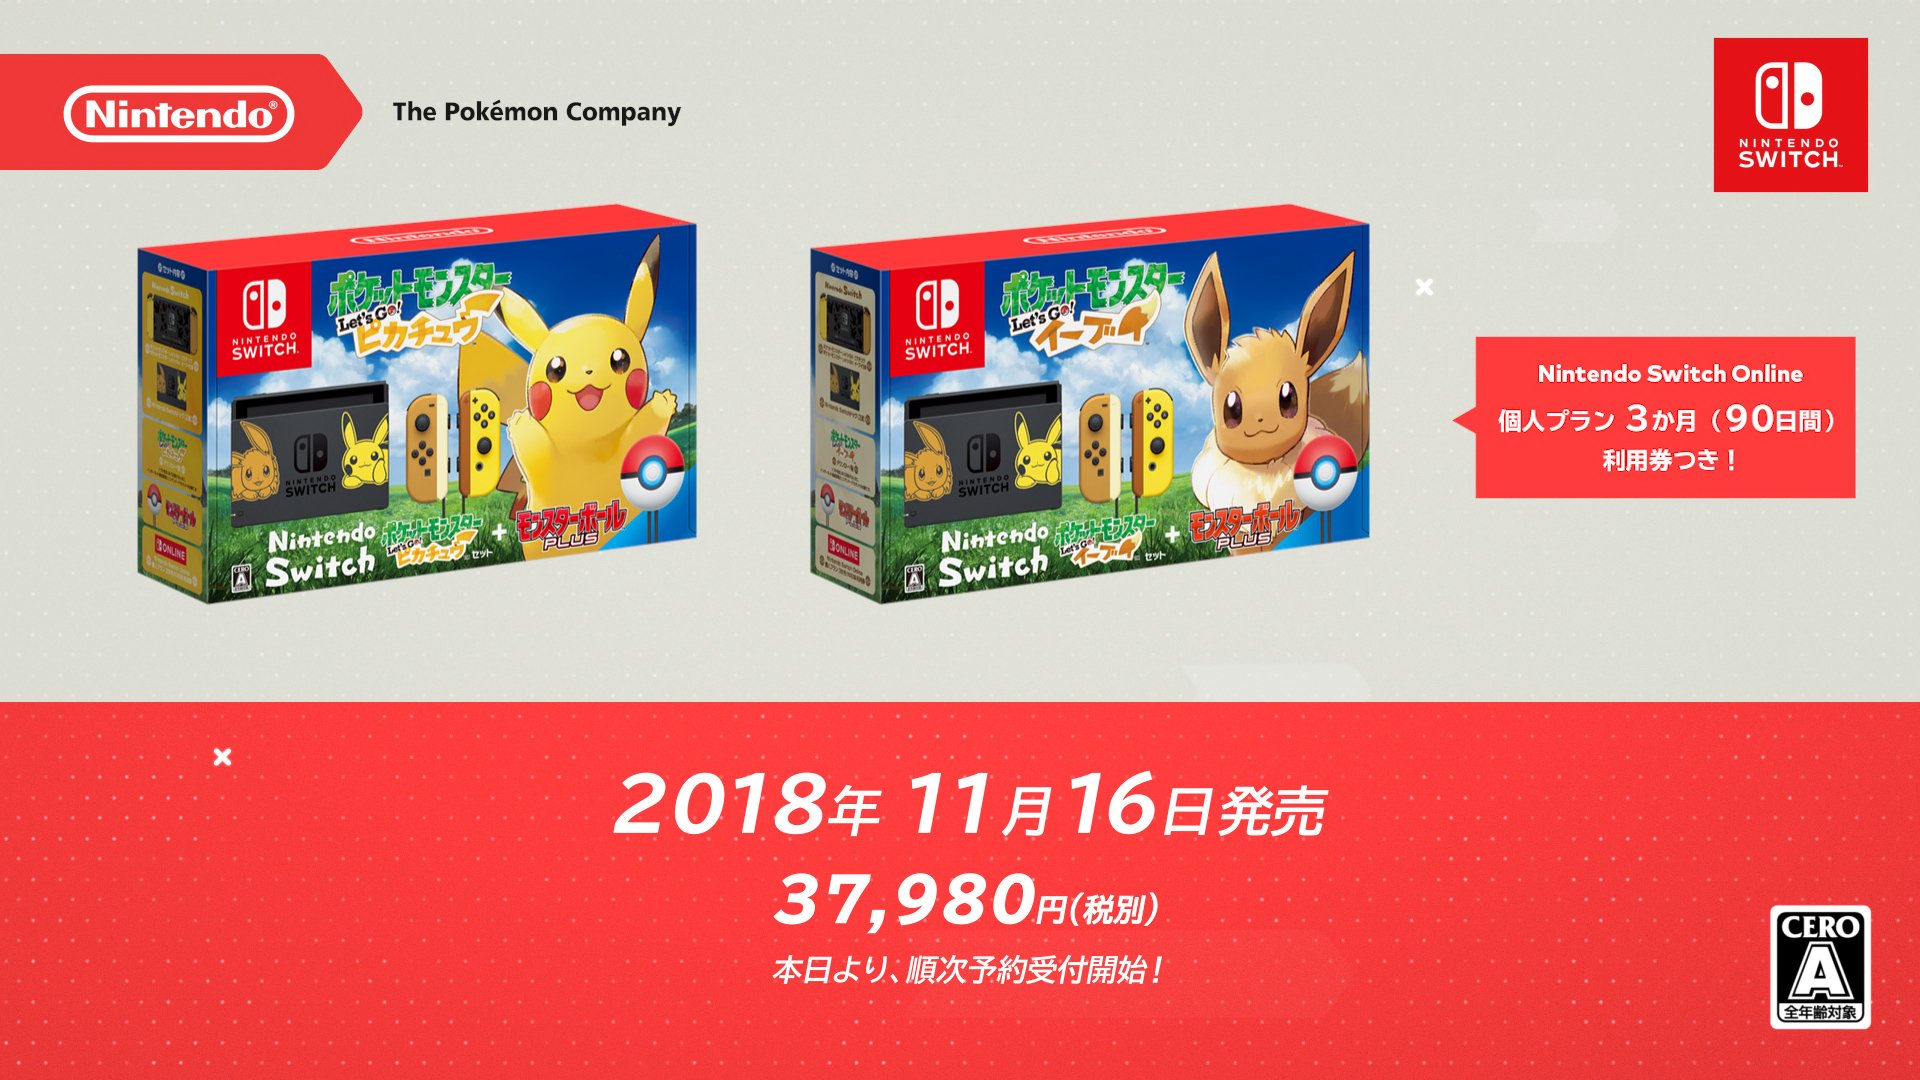 任天堂株式会社 on Twitter: "『Nintendo Switch ポケットモンスター Let's Go! ピカチュウセット・イーブイ